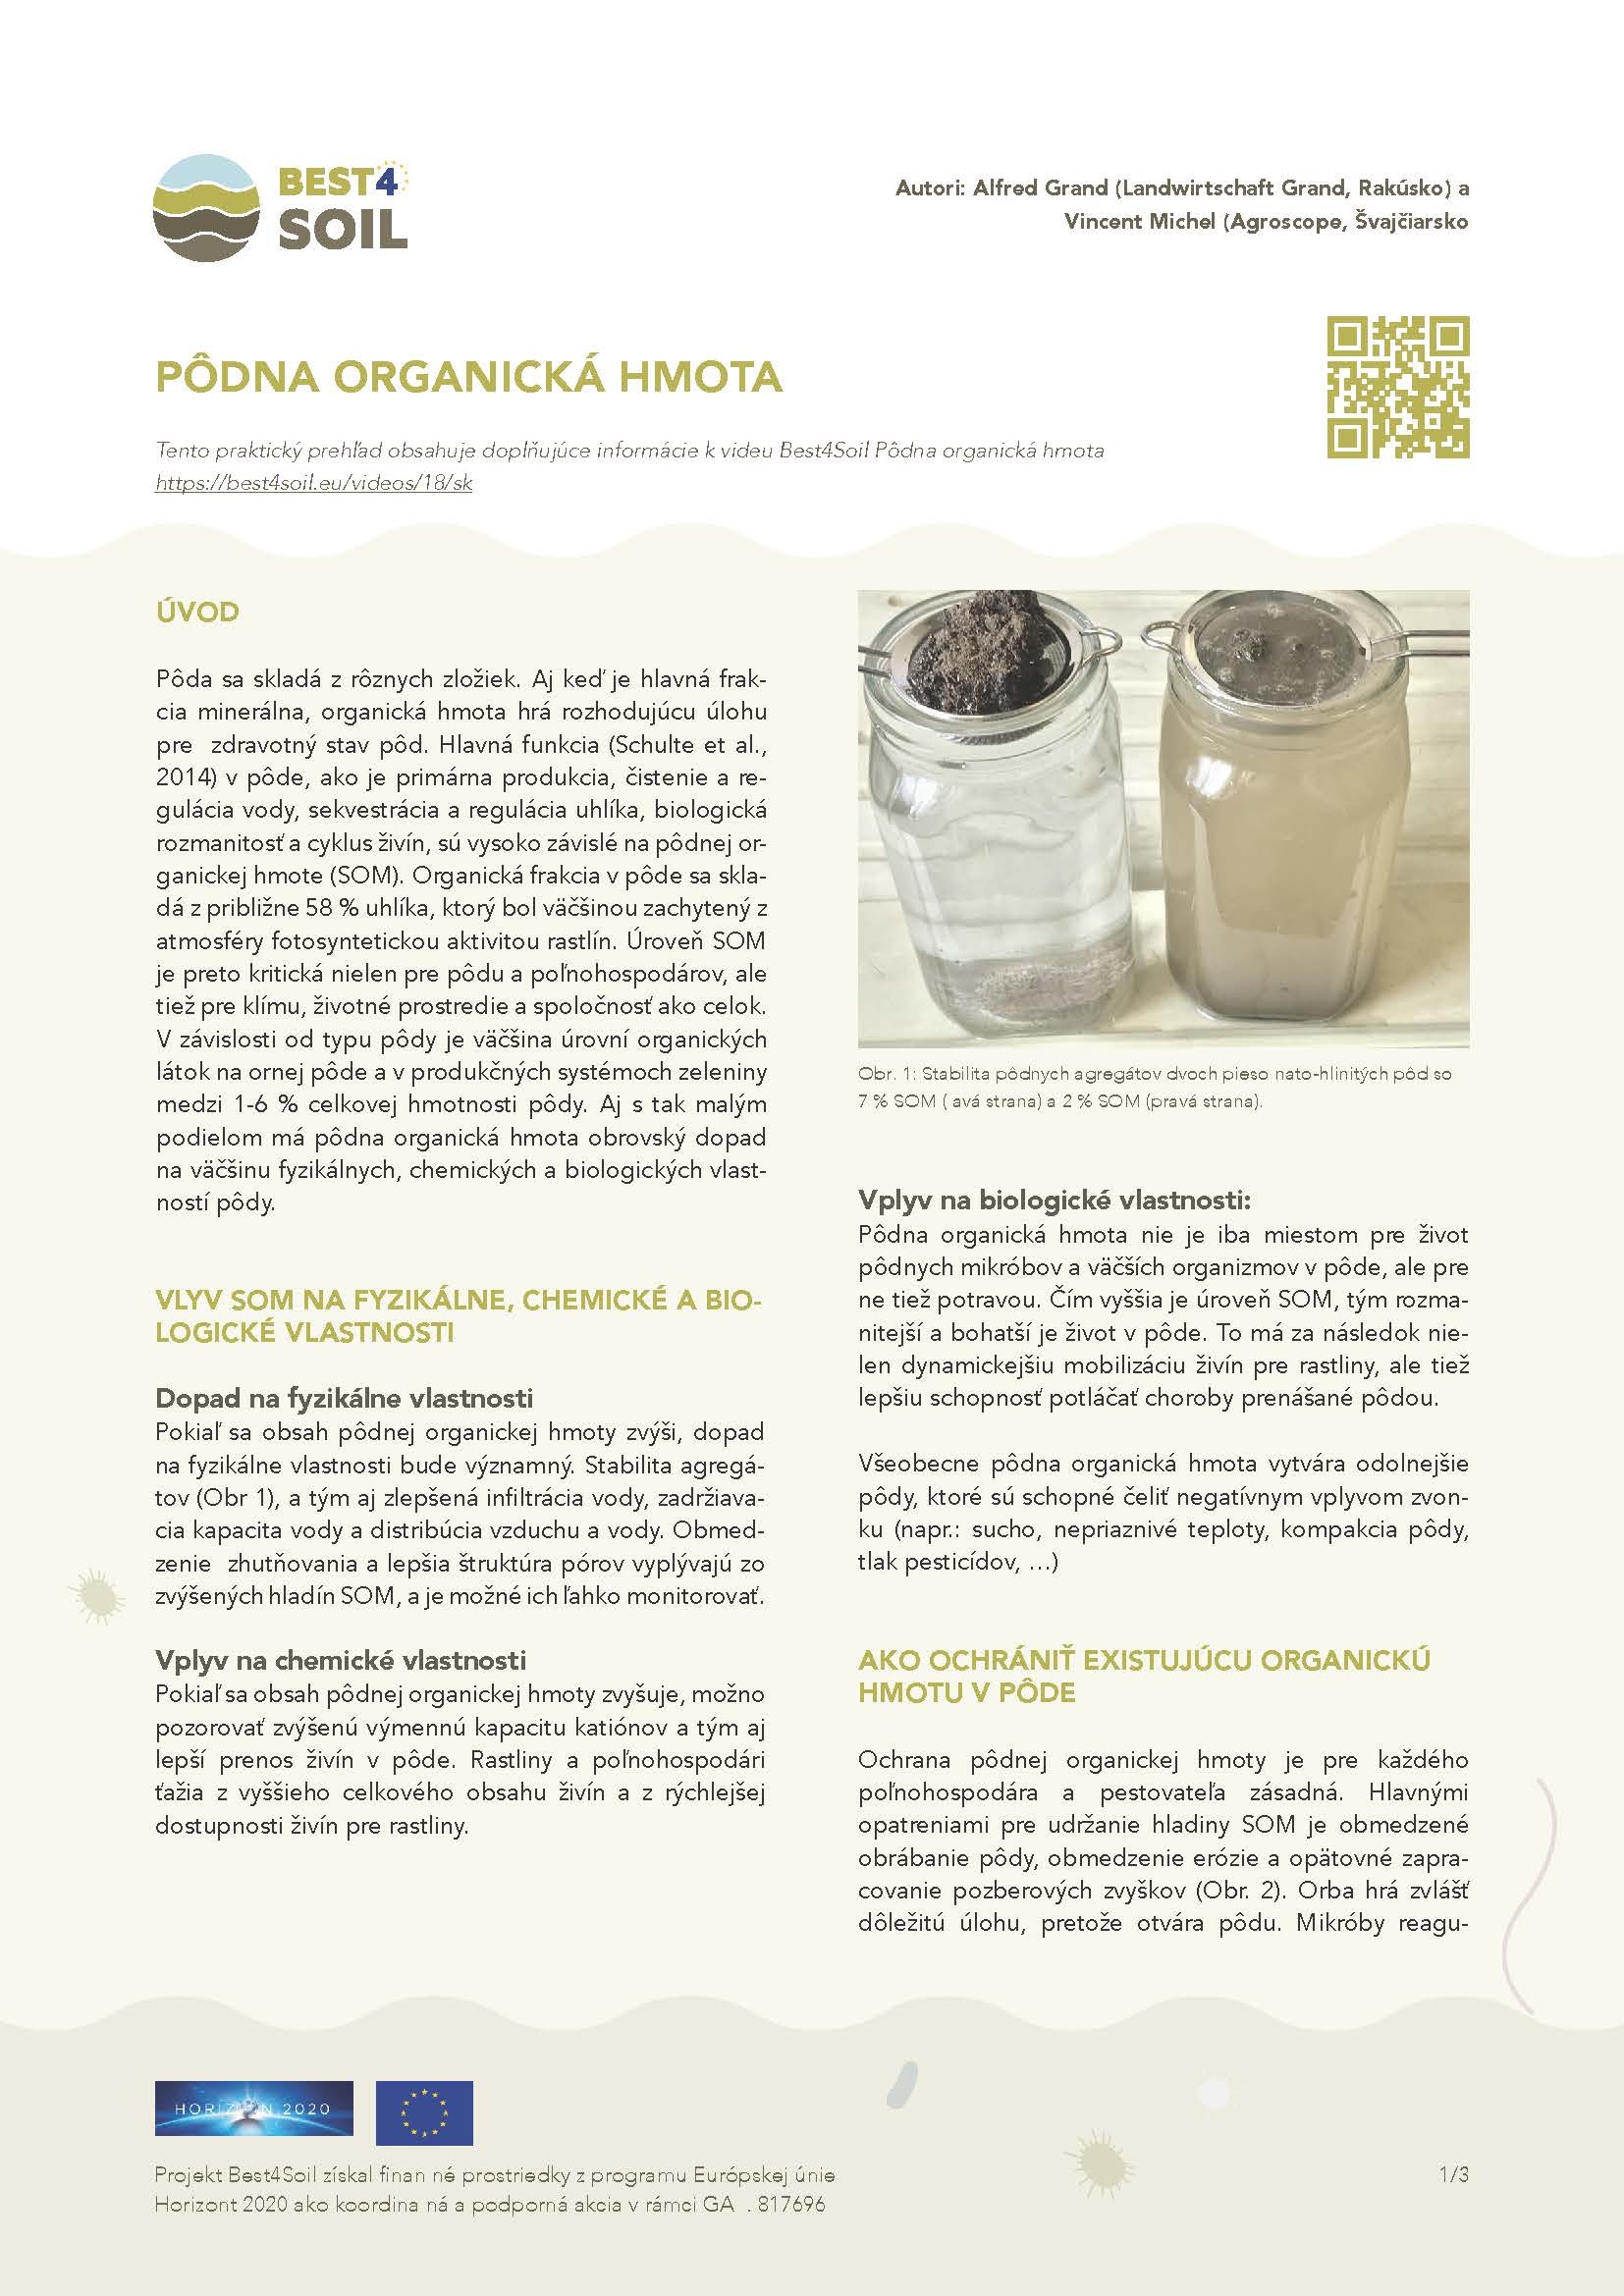 Органична материя в почвата (информационен лист за Best4Soil)